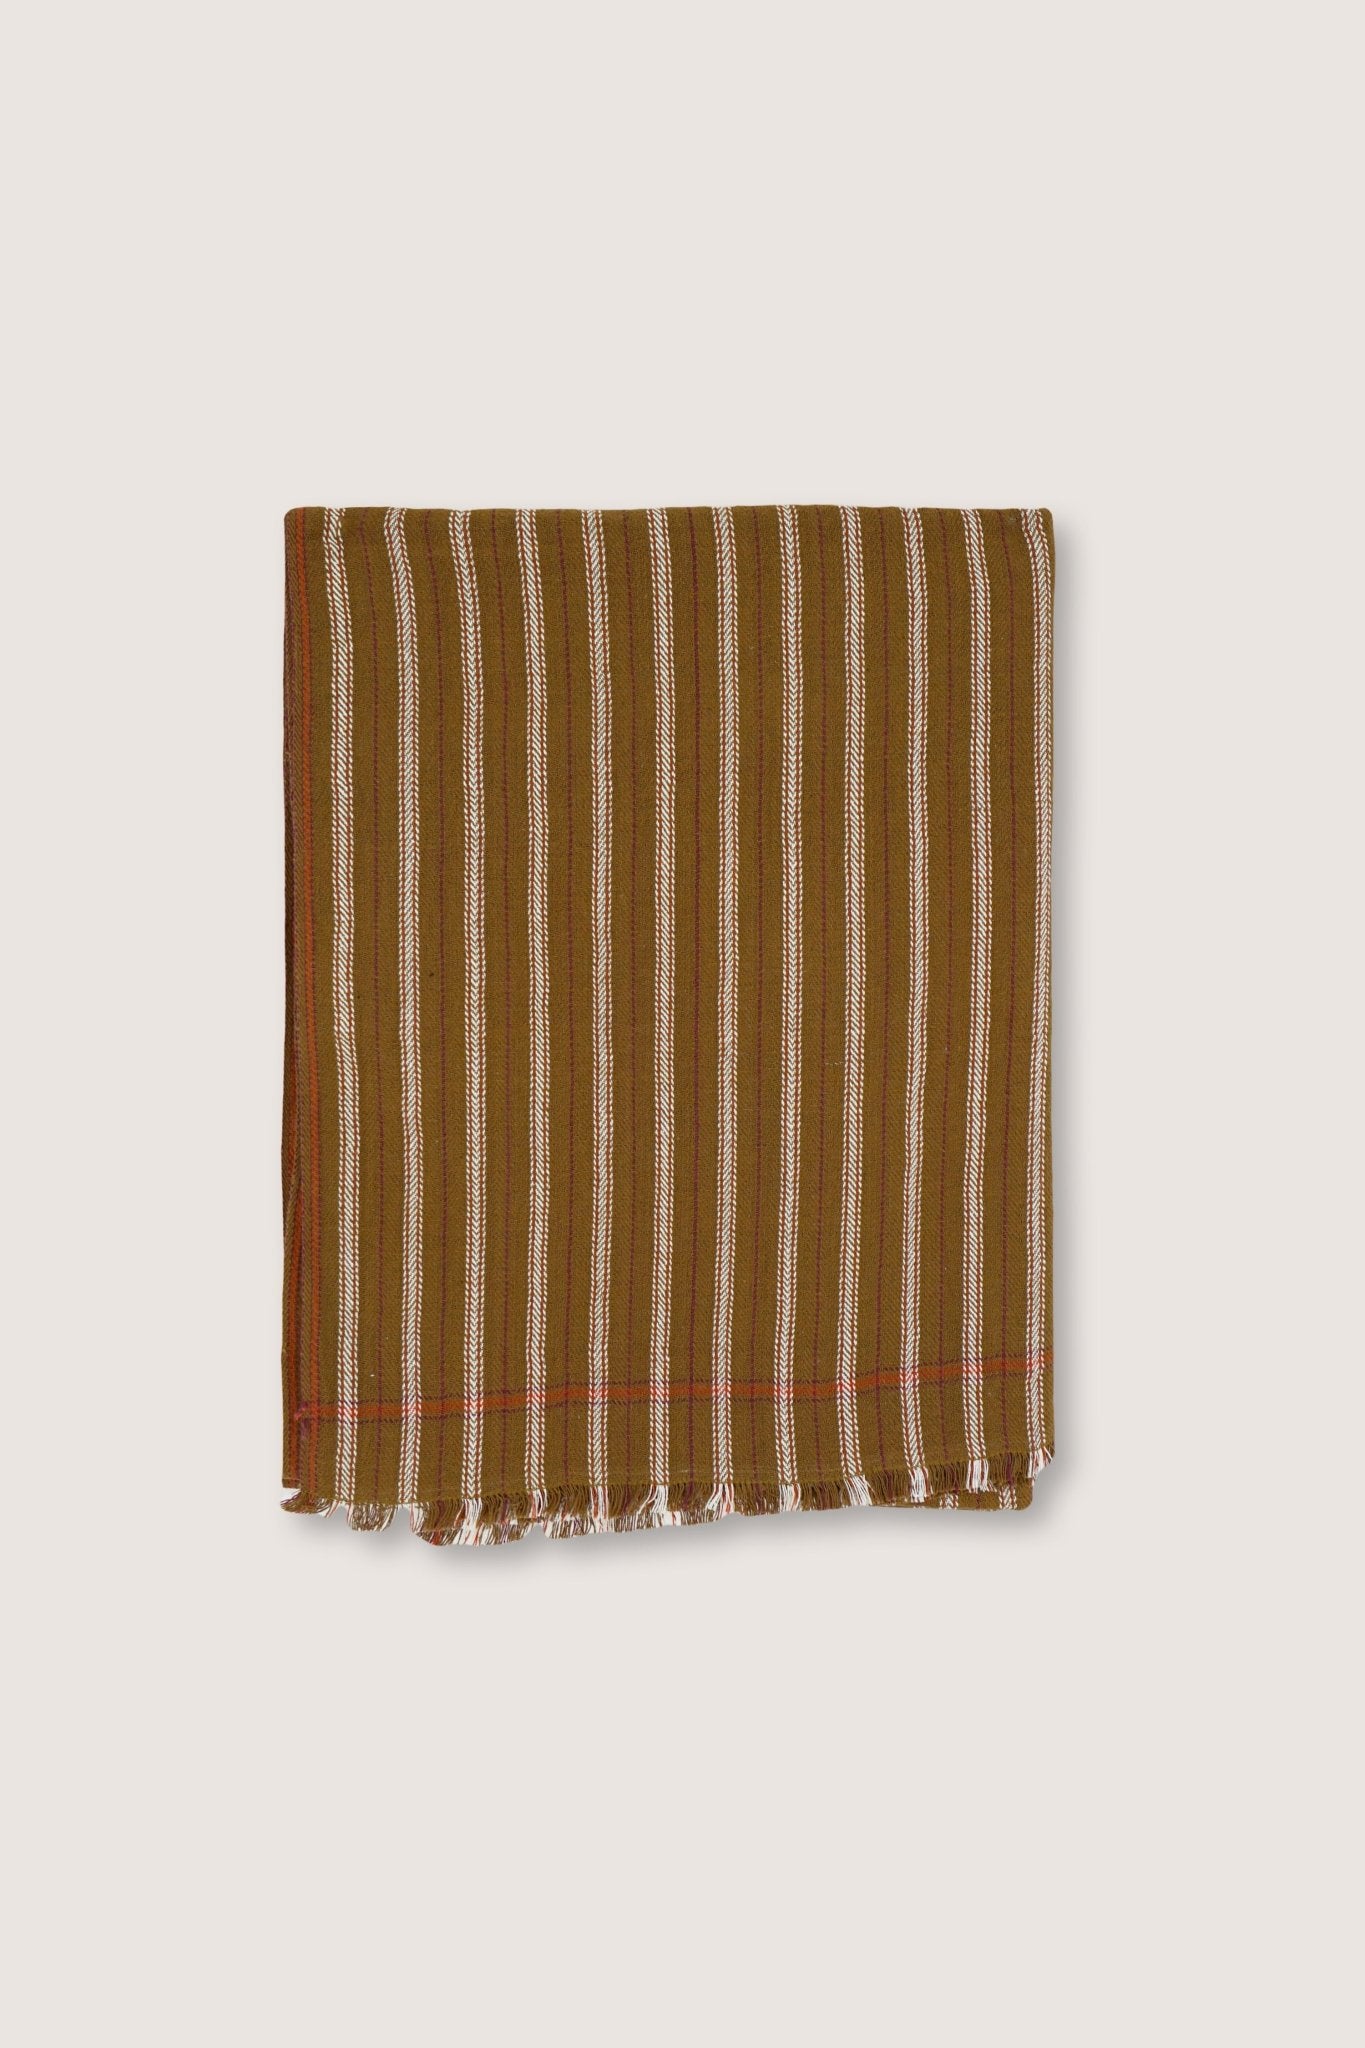 Plaid Coton N°29 Wood - Moismont